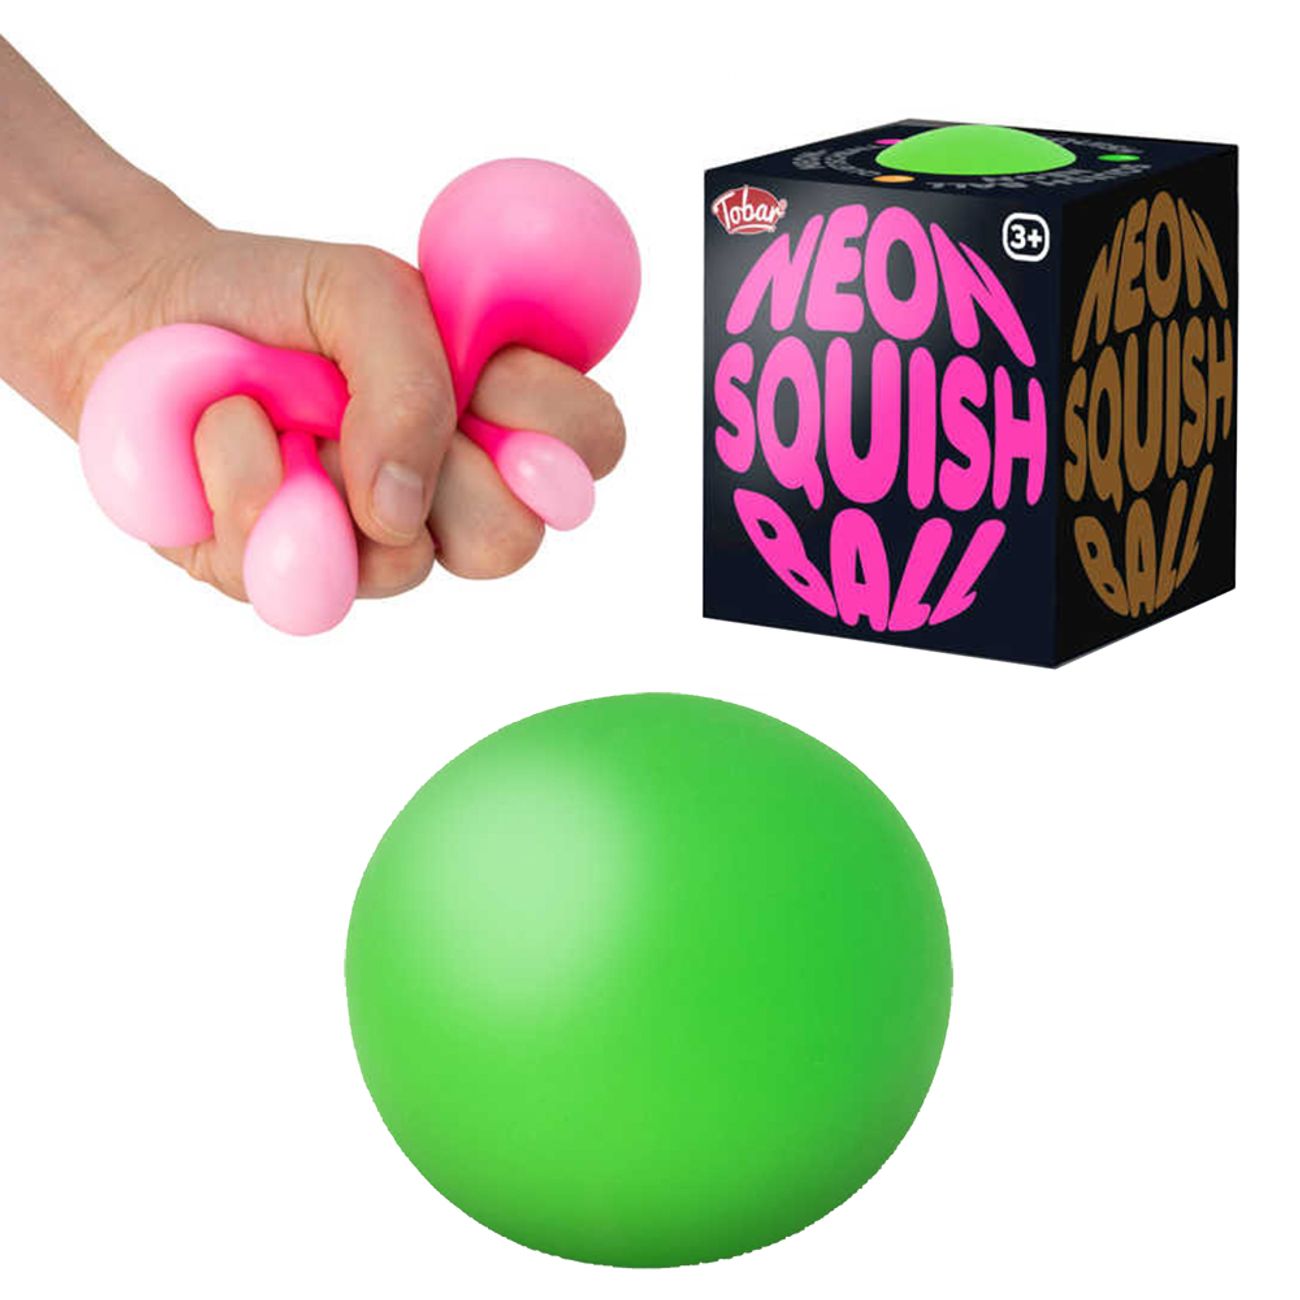 neon-squish-ball-81035-1